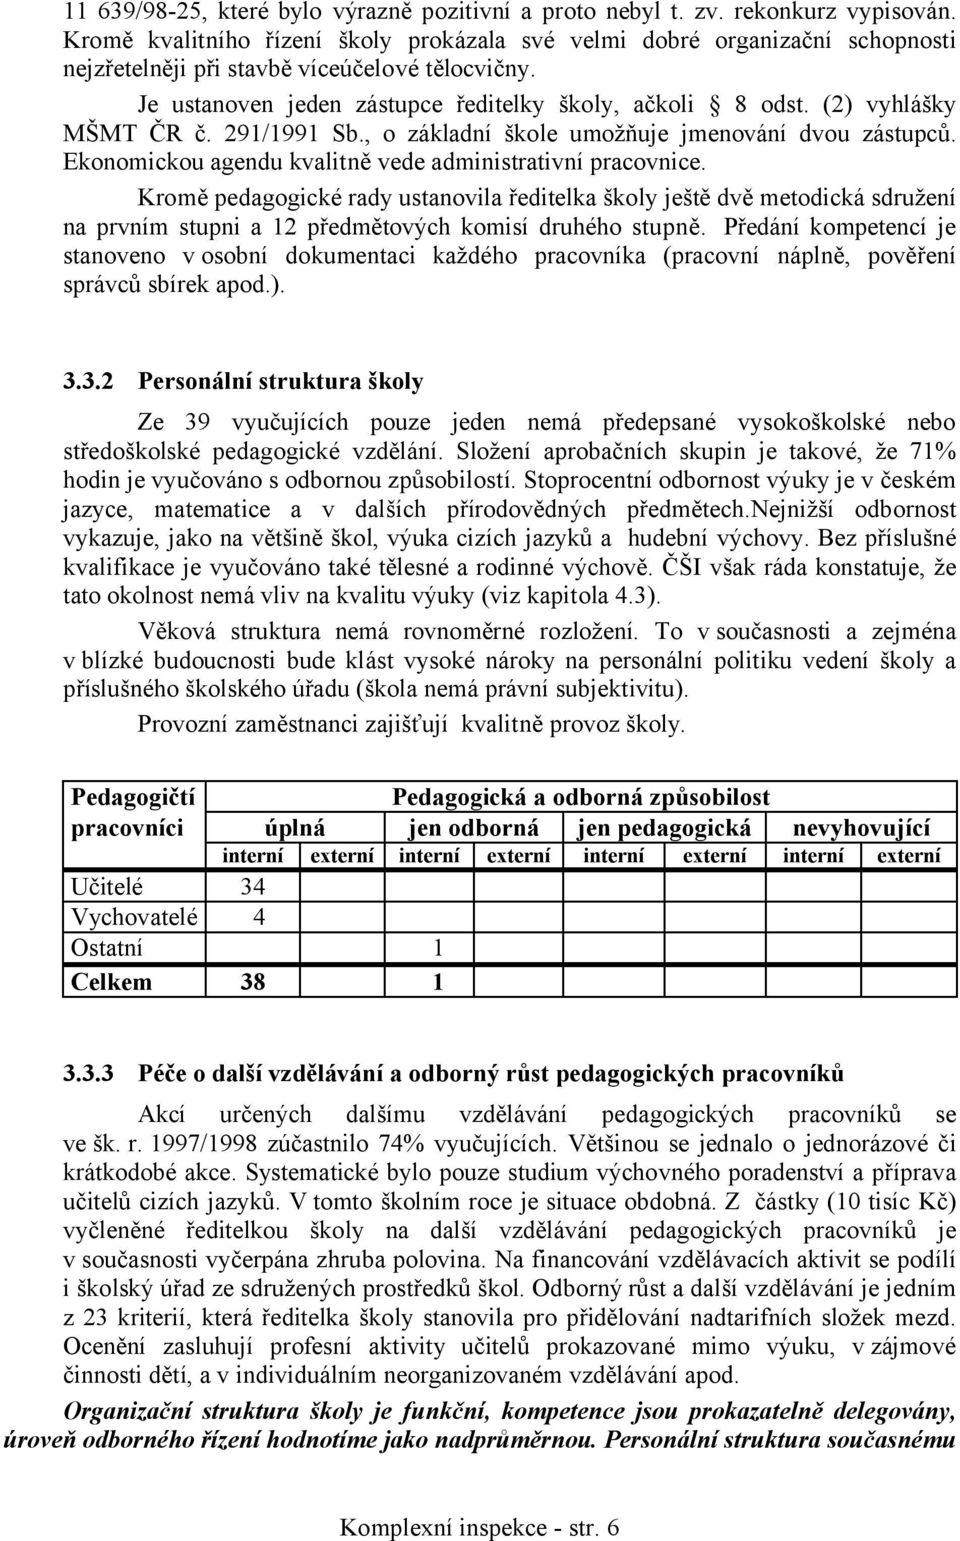 (2) vyhlášky MŠMT ČR č. 291/1991 Sb., o základní škole umožňuje jmenování dvou zástupců. Ekonomickou agendu kvalitně vede administrativní pracovnice.